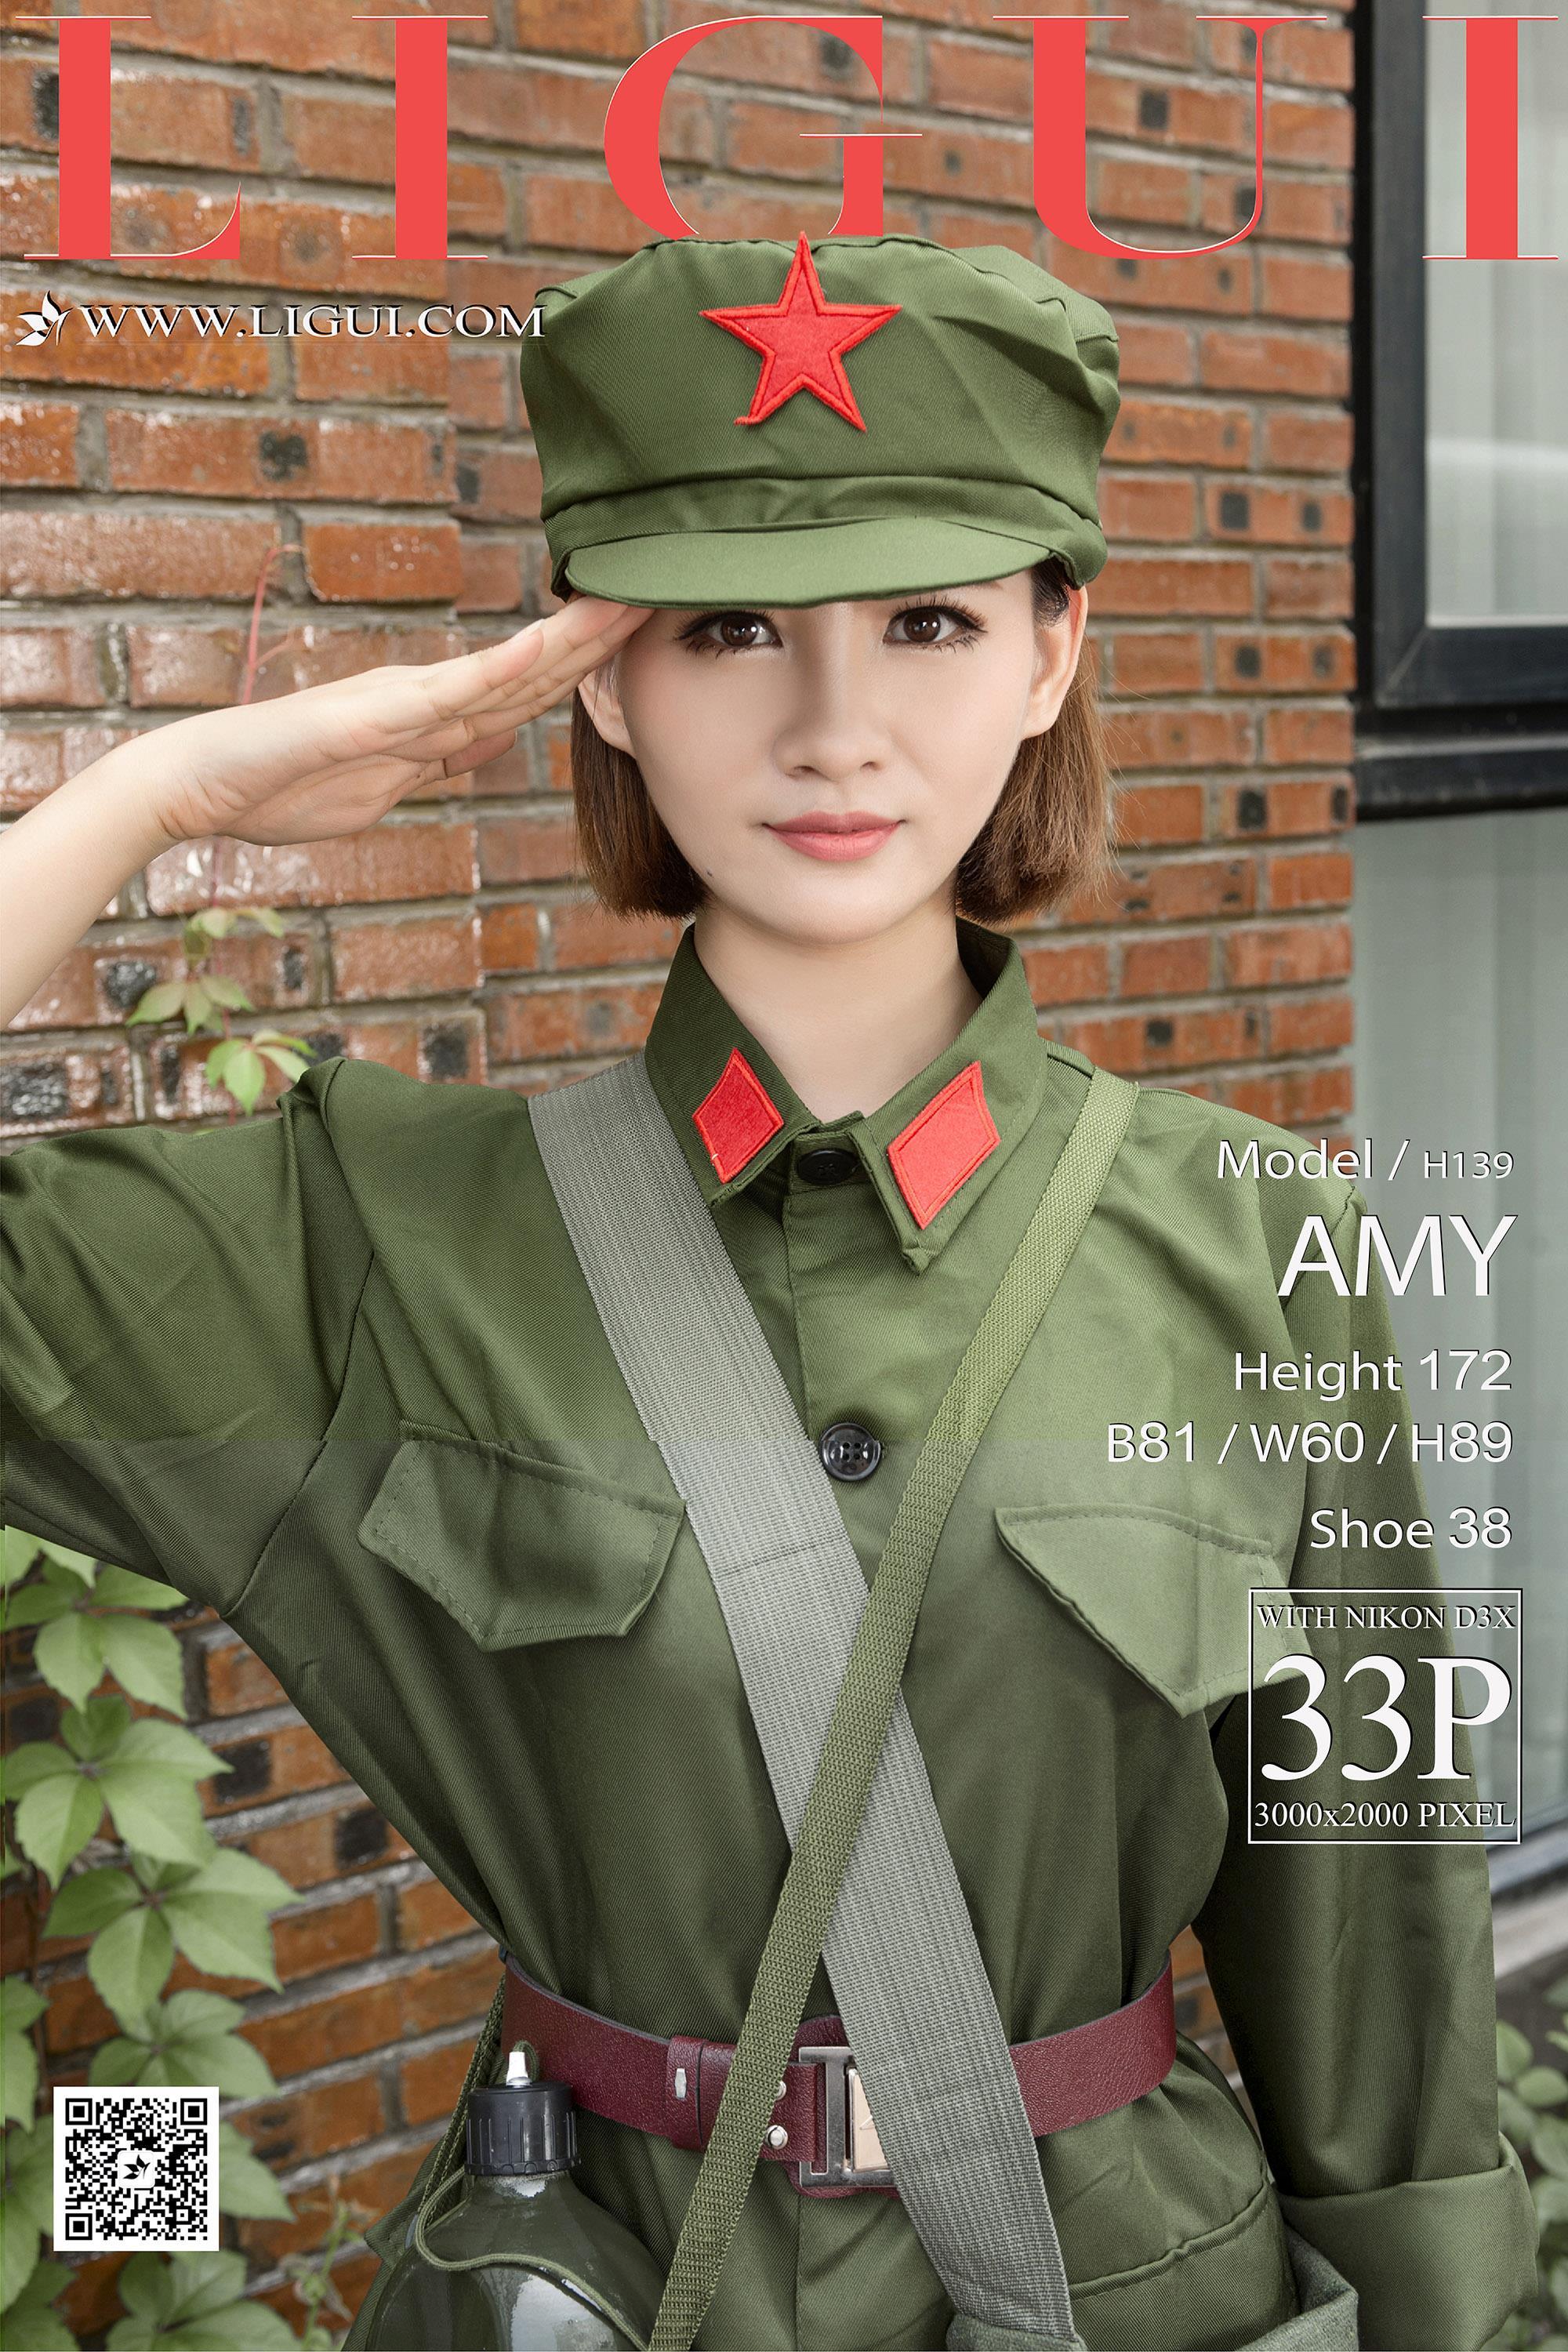 [Ligui丽柜会所]2017-08-01 Model AMY 八一特辑 绿色军装致敬红色娘子军,